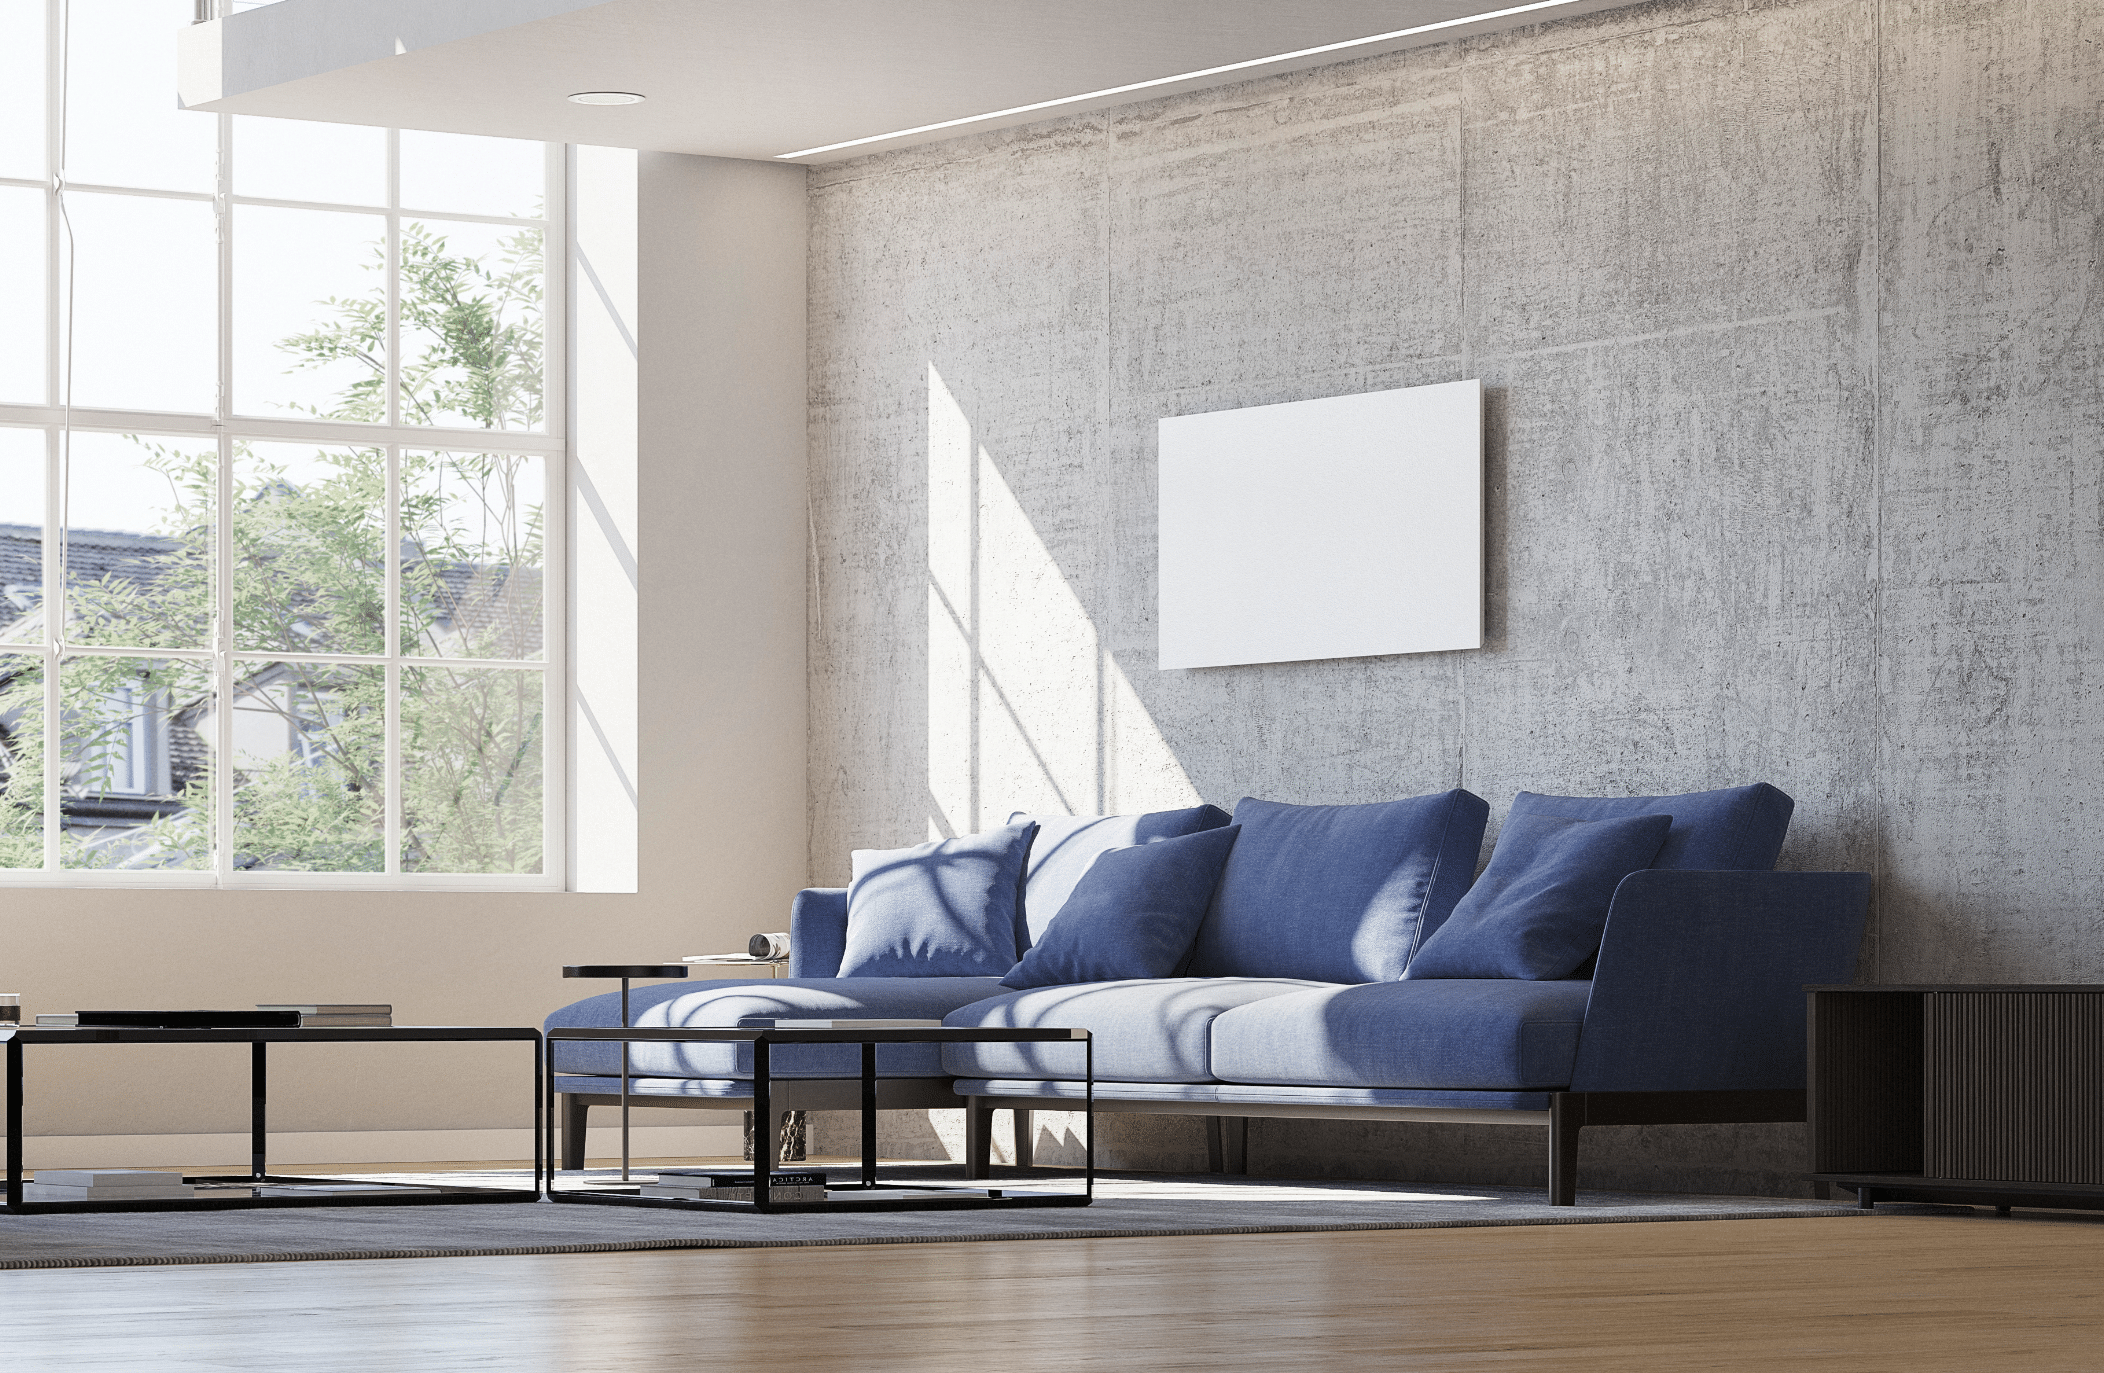 Dimplex zeigt ein großes Wohnzimmer im Industrial Style mit einem großflächigen Fenster mit weissen Rahmen und einer Betonwand, blauer Sitzlandschaft und Holzboden mit verlegter Fussbodenheizung.